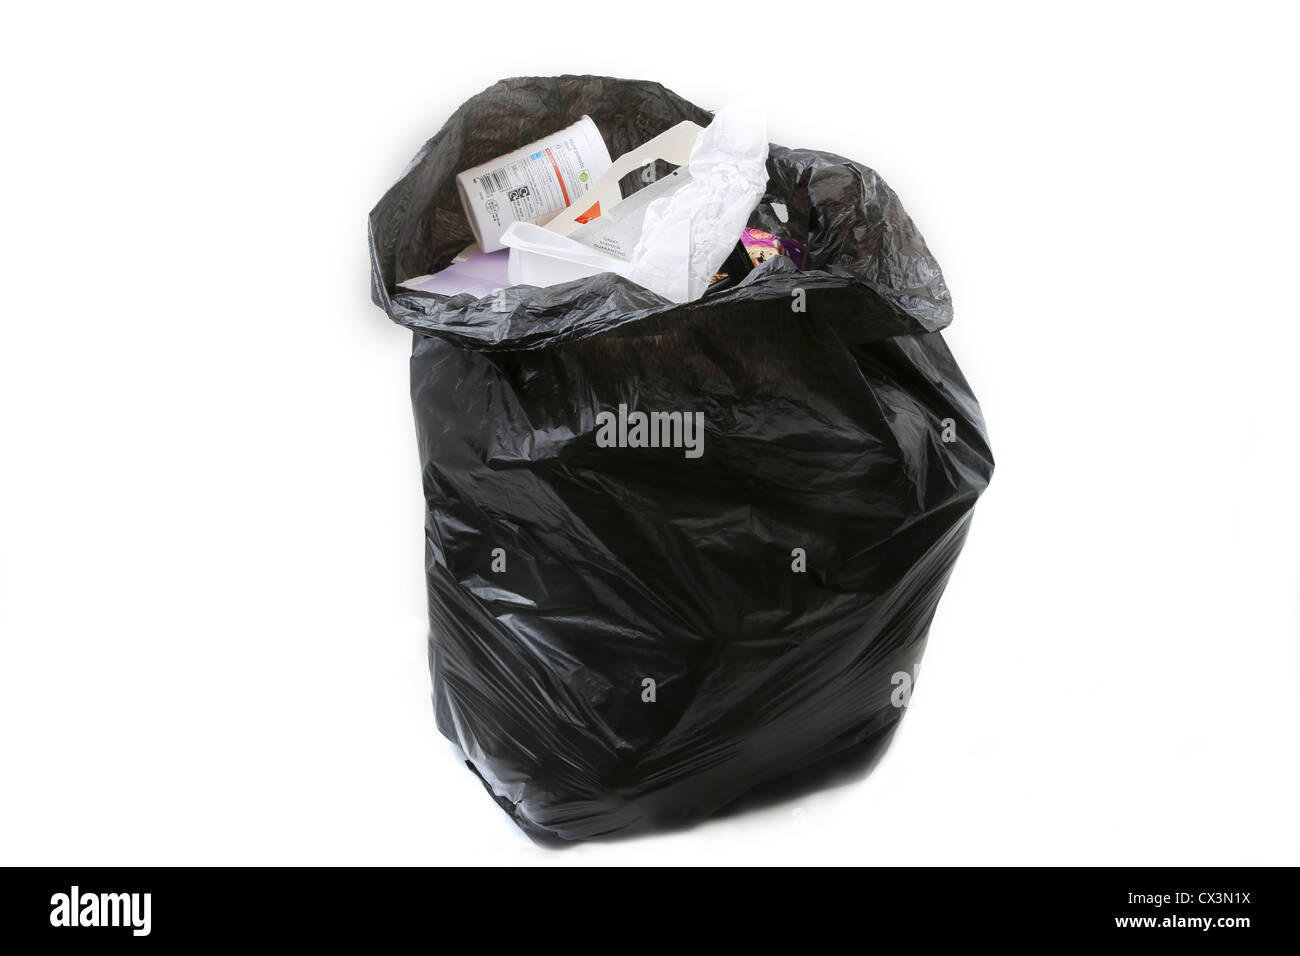 Sac poubelle noir pleine de détritus Photo Stock - Alamy